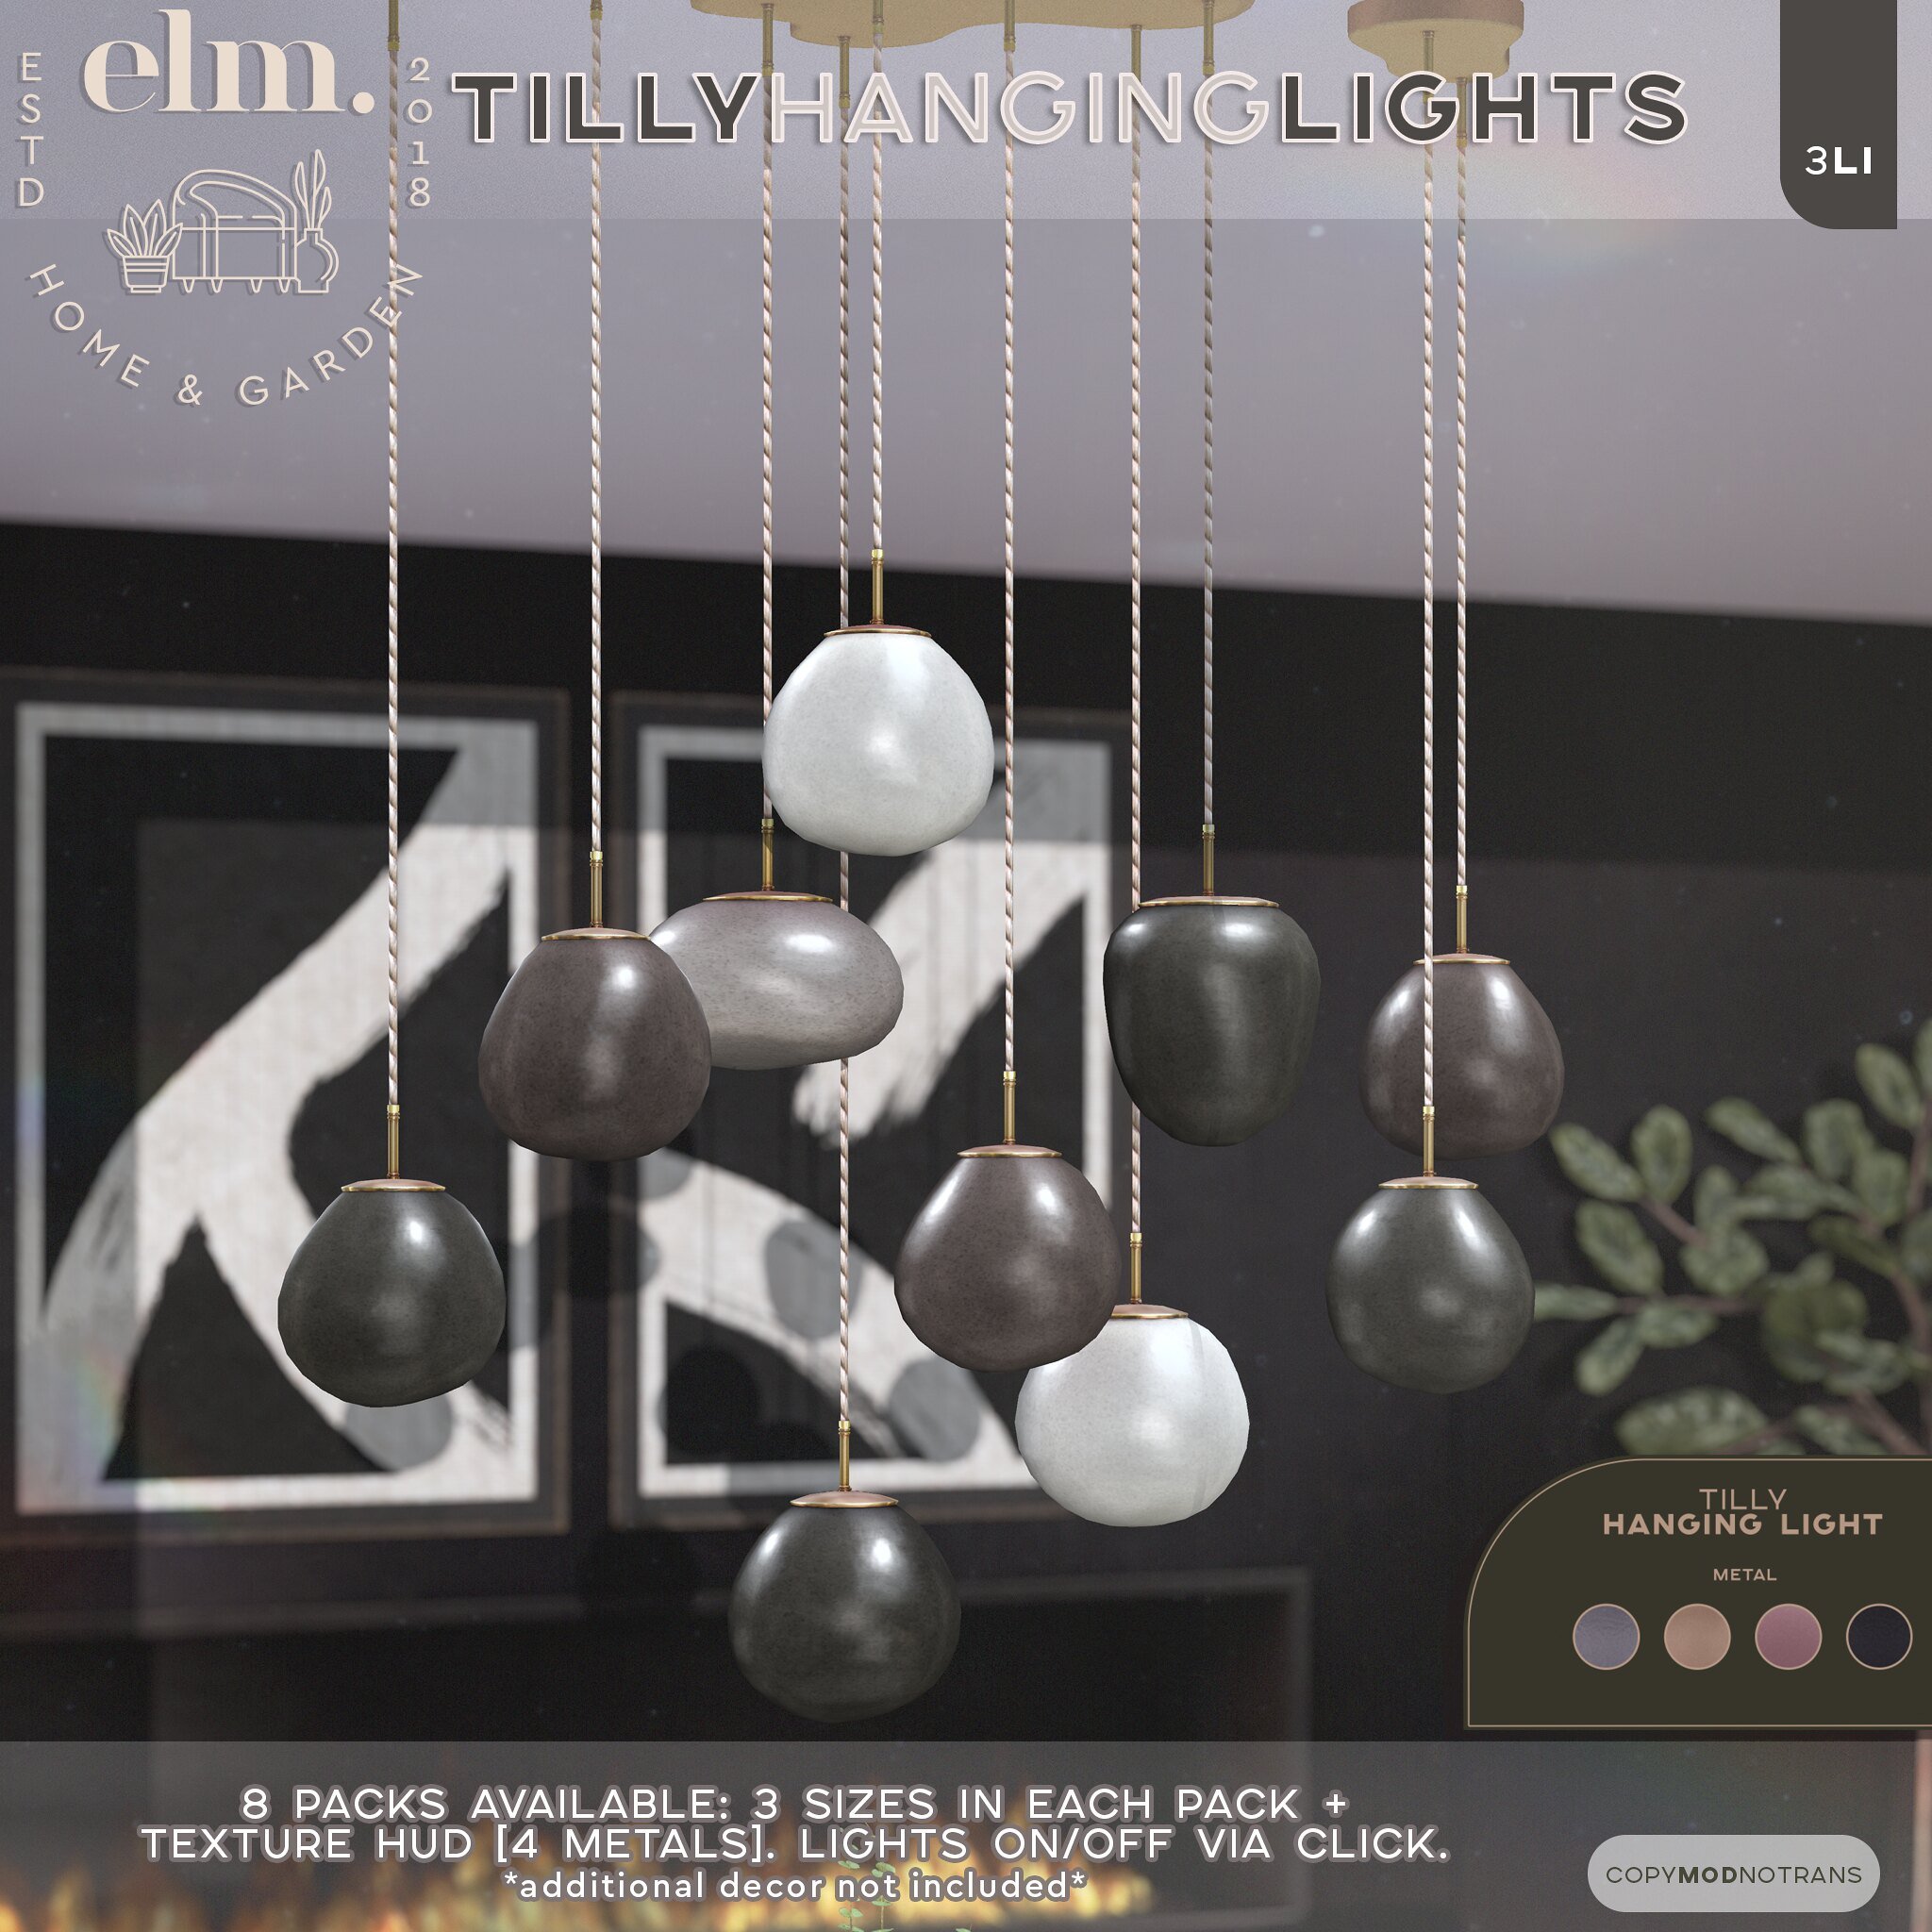 Elm. Tilly Hanging Lights